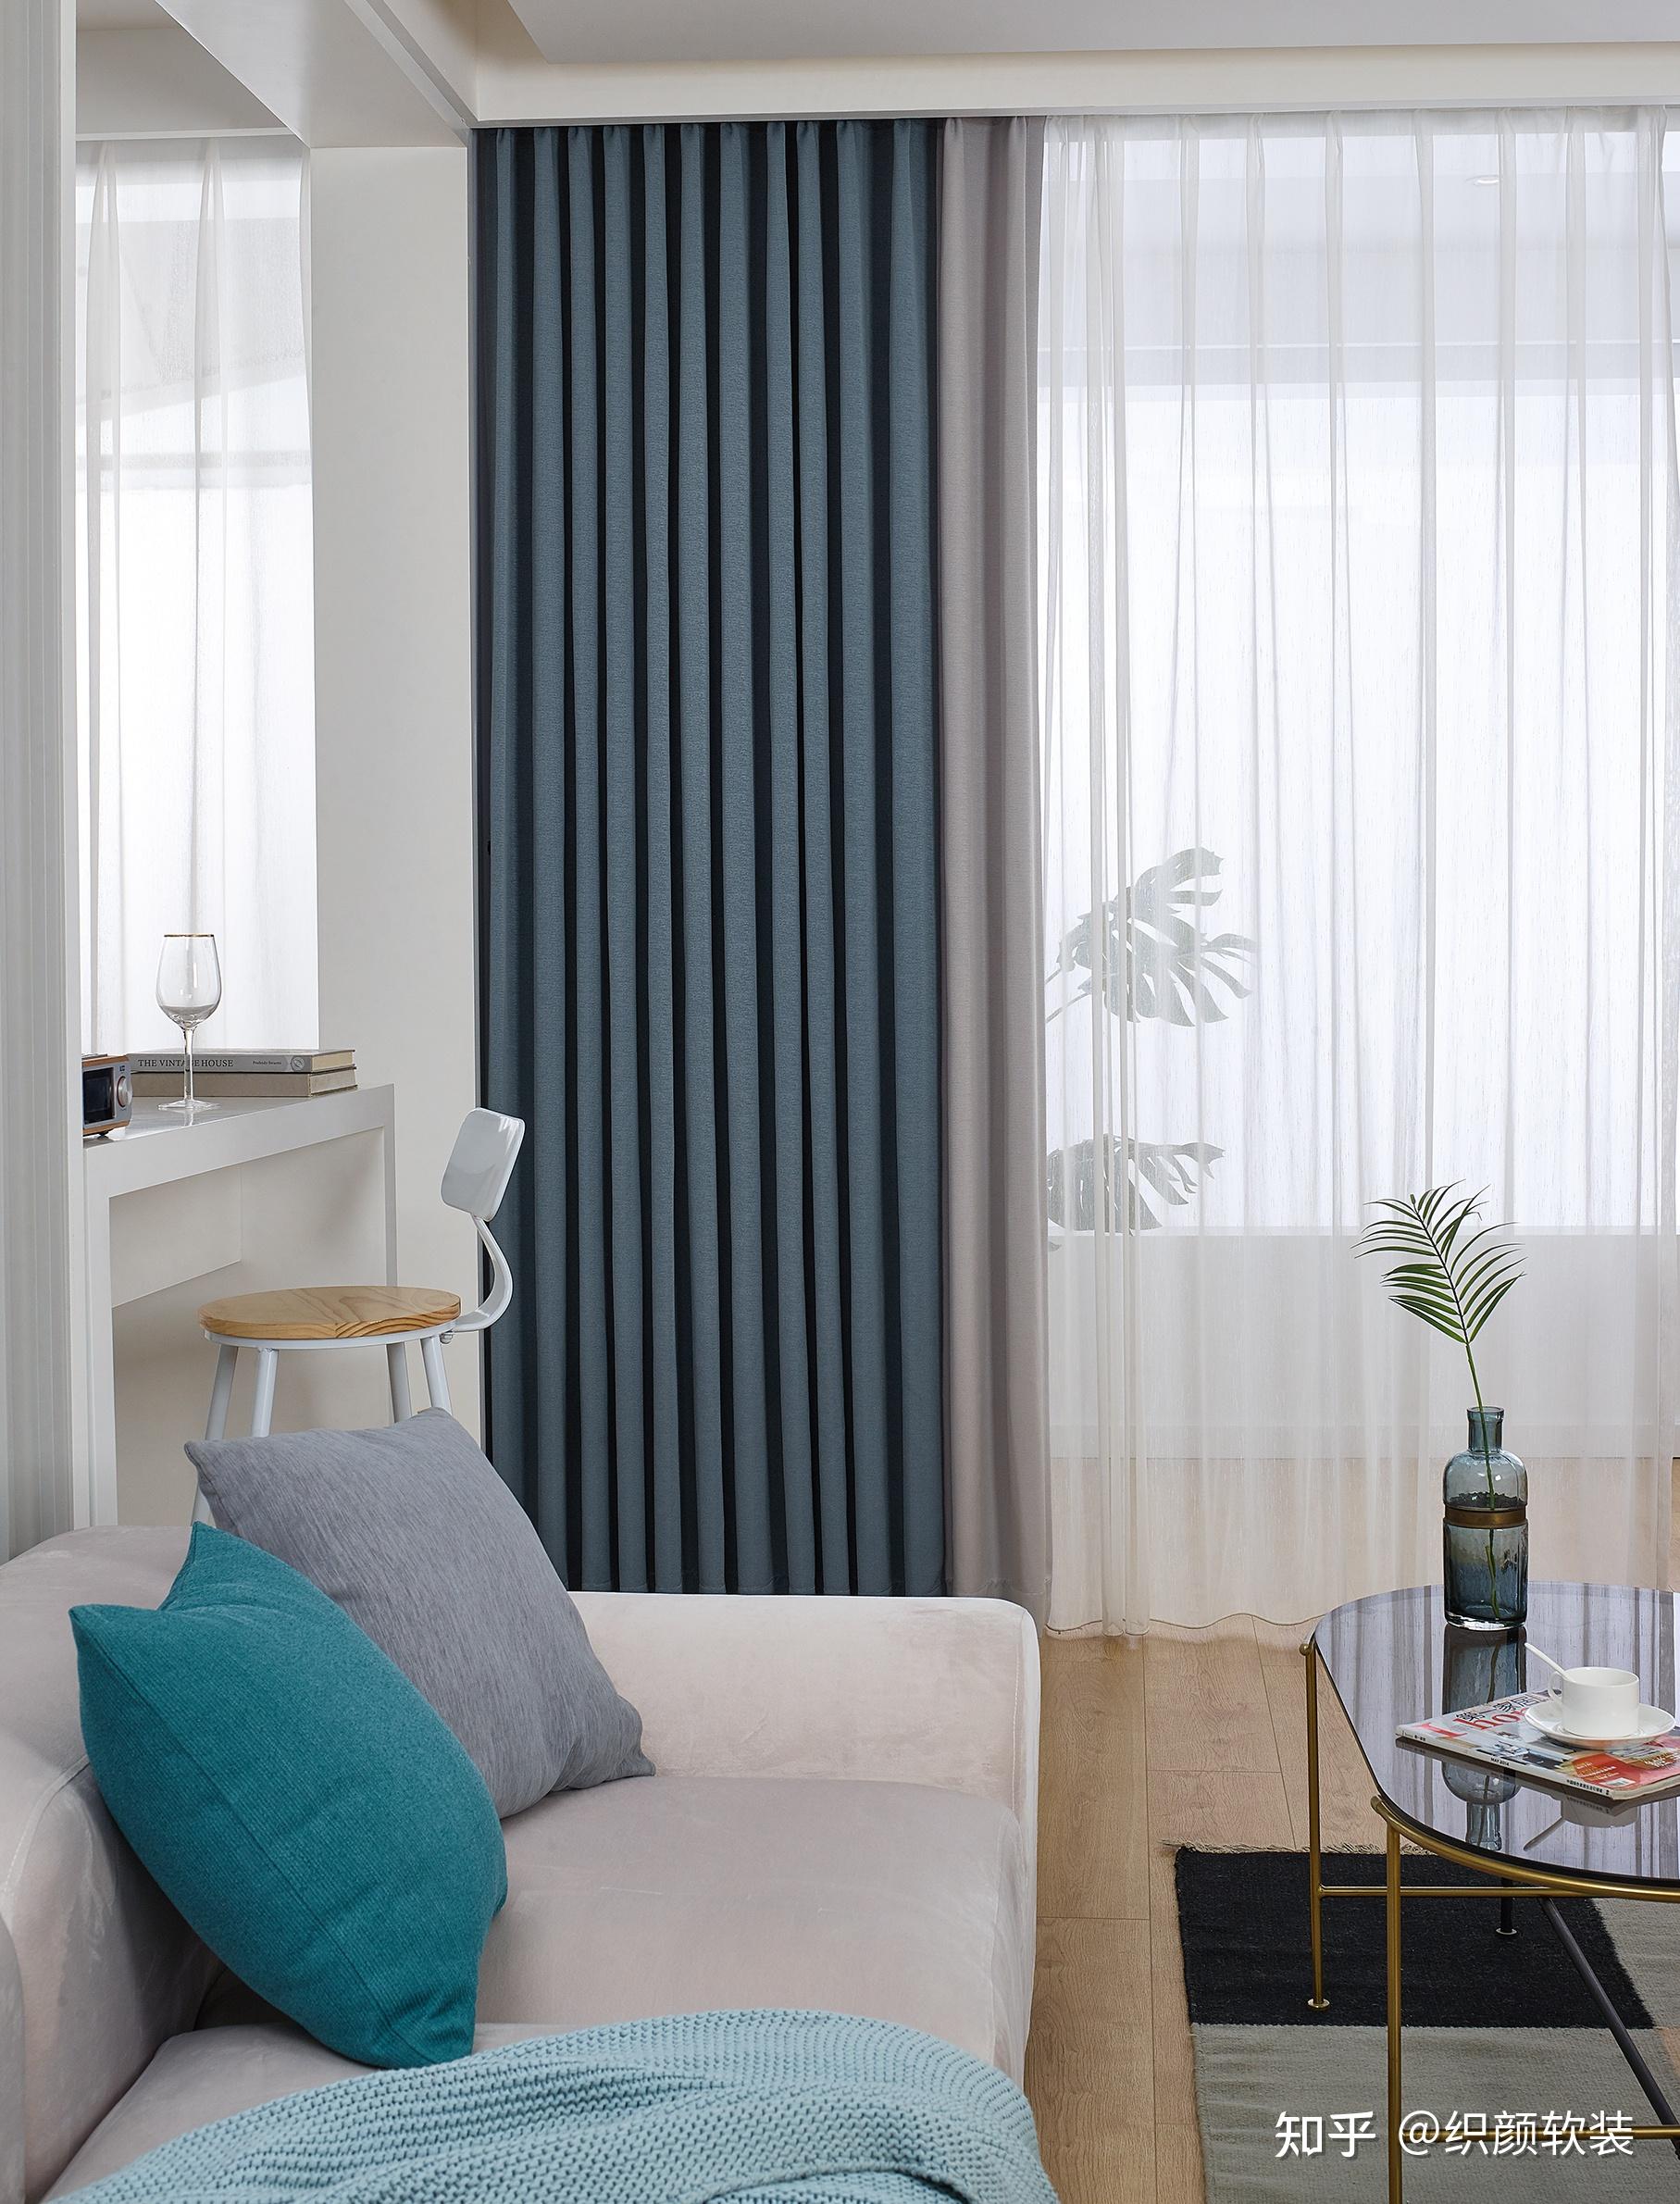 中式风格客厅装修效果图搭配蓝色沙发窗帘装饰设计_蛙客网viwik.com